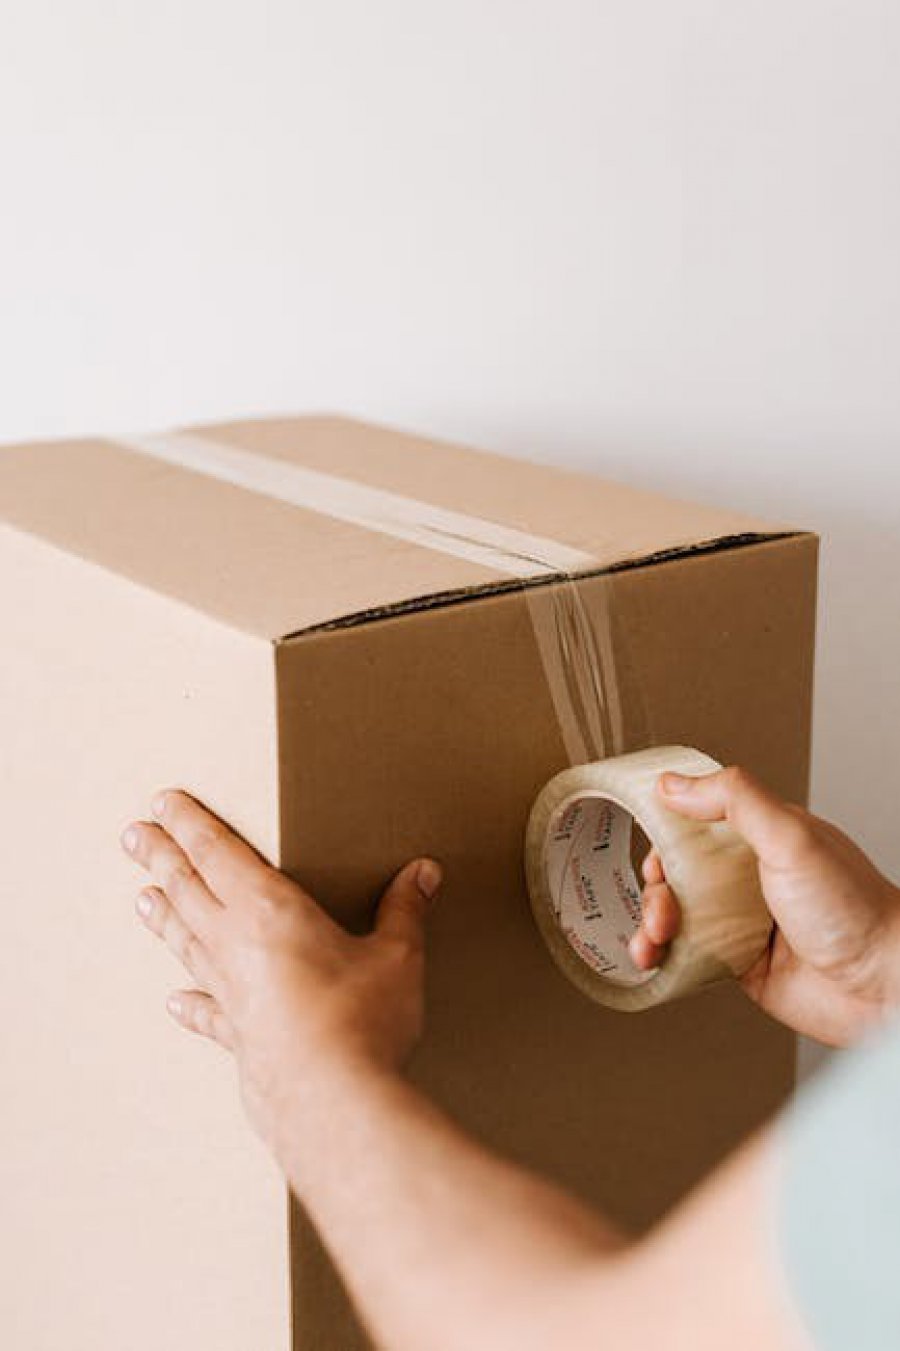 Pudełka wysyłkowe - kluczowe elementy opakowań dla sklepów internetowych w e-commerce